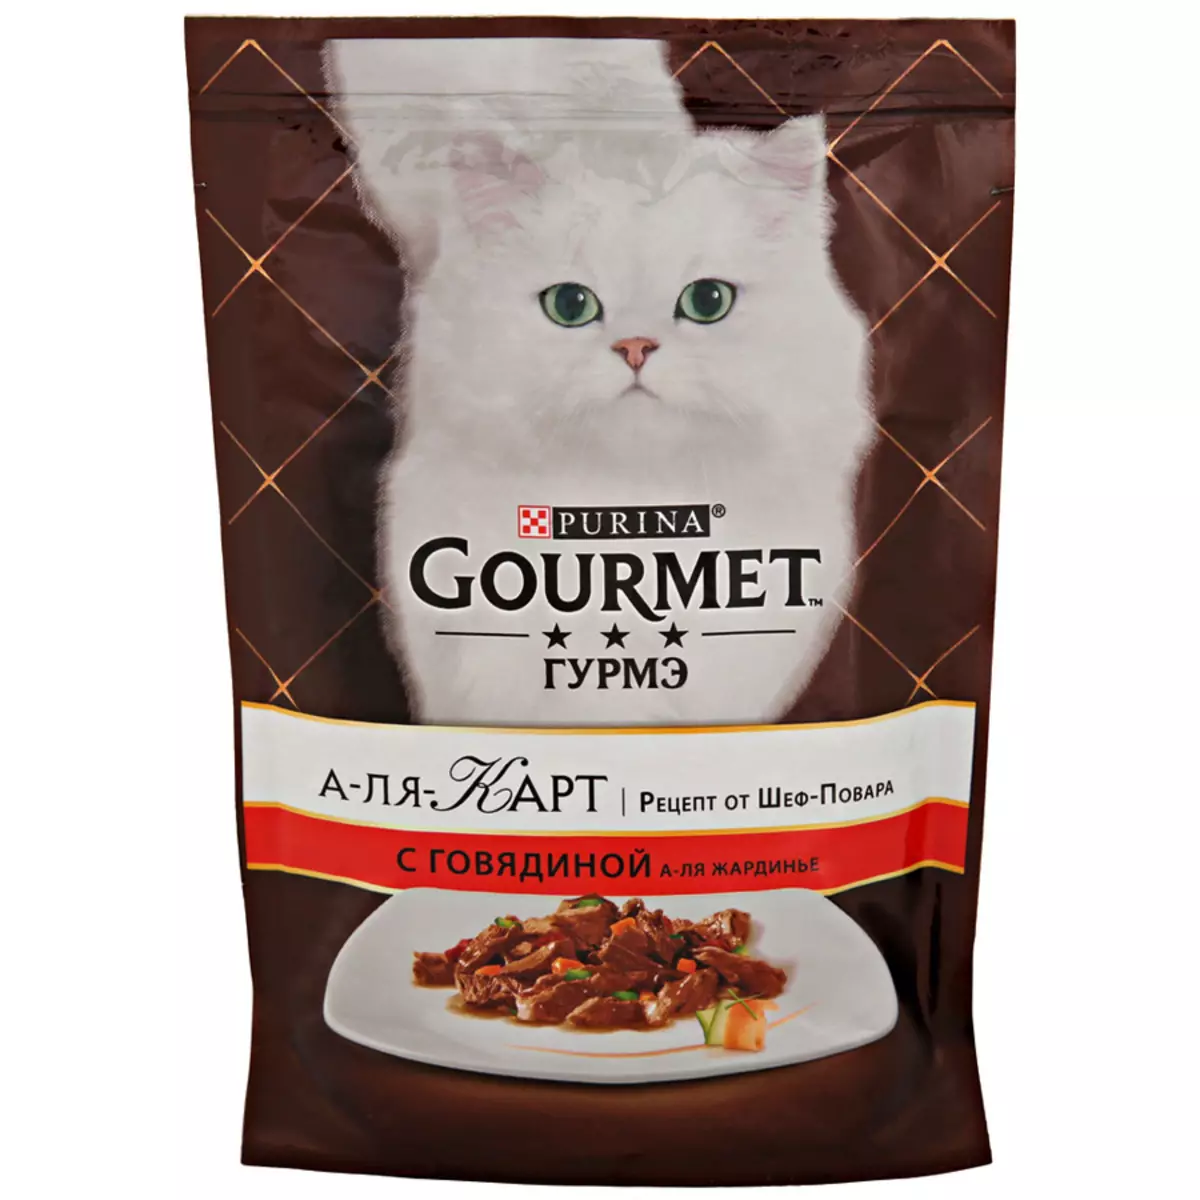 Gourmet: Cat Feed ug Purina Kittens, basa nga mga pates ug uban pang mga feline de lata nga pagkaon, ilang komposisyon, mga review 22711_40